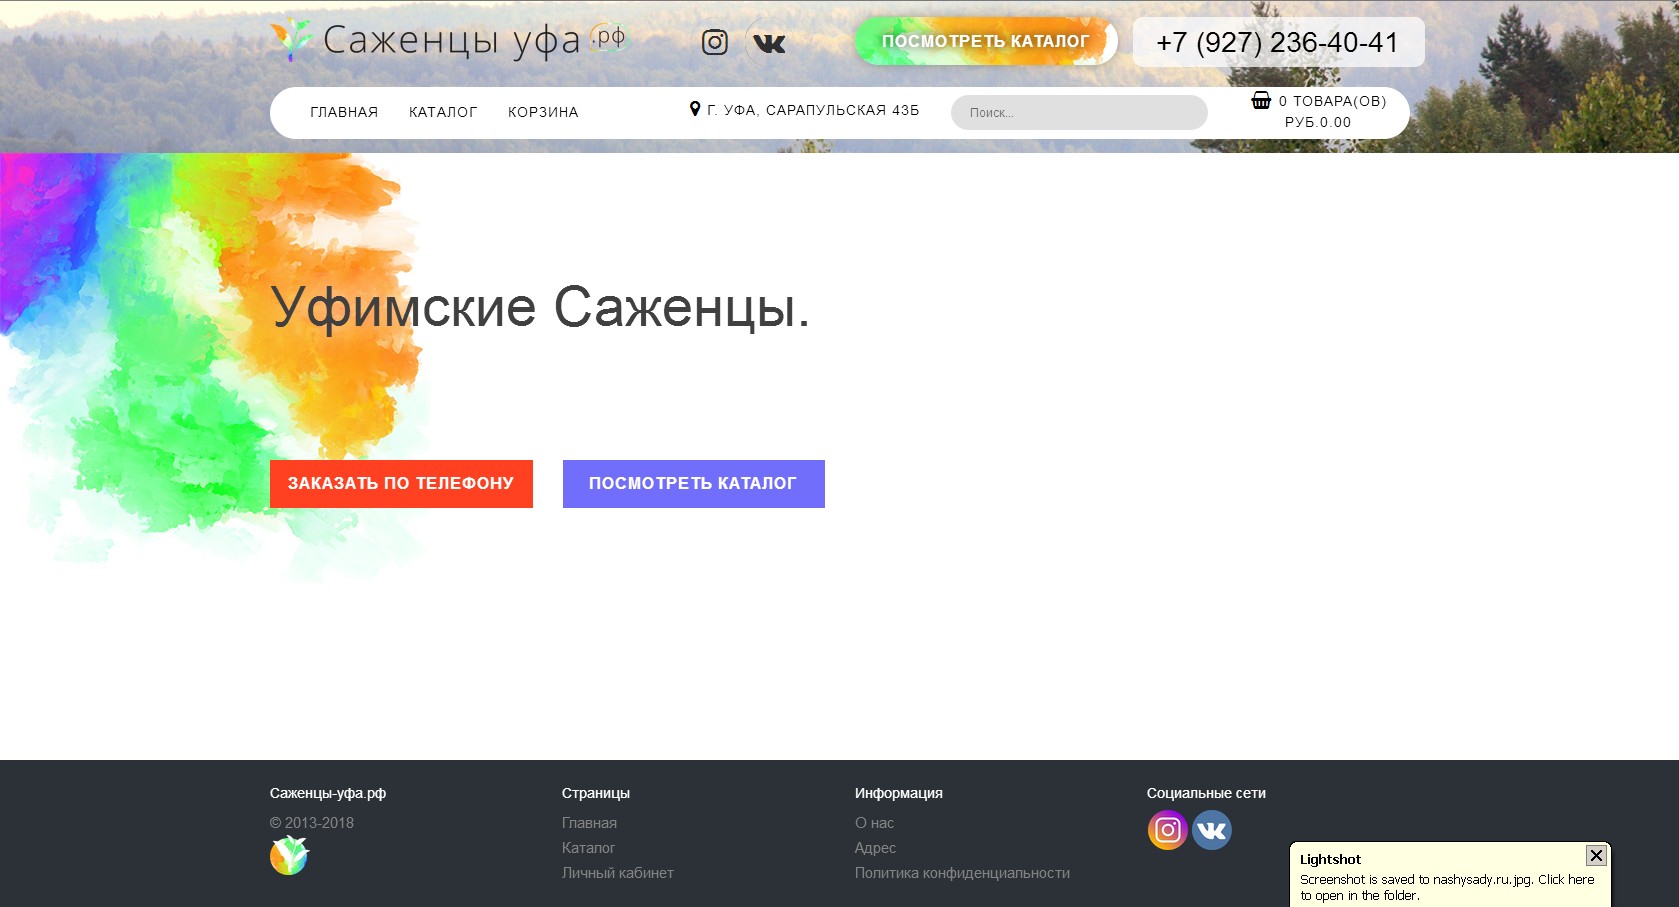 логотип саженцы-уфа.рф